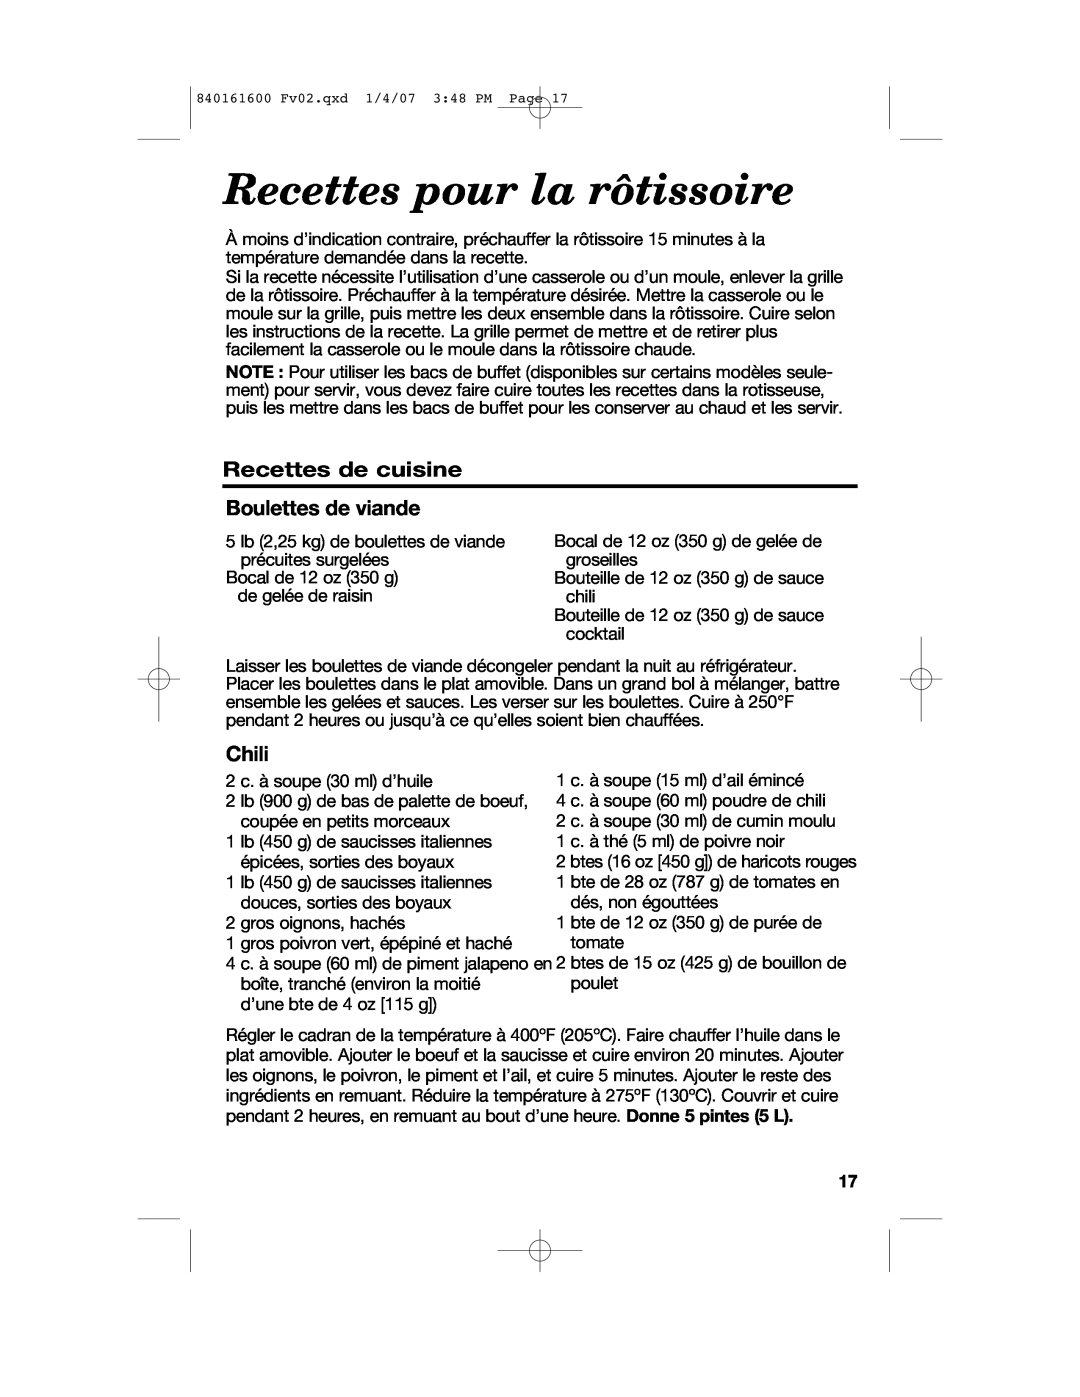 Proctor-Silex 840161600 manual Recettes pour la rôtissoire, Recettes de cuisine Boulettes de viande, Chili 